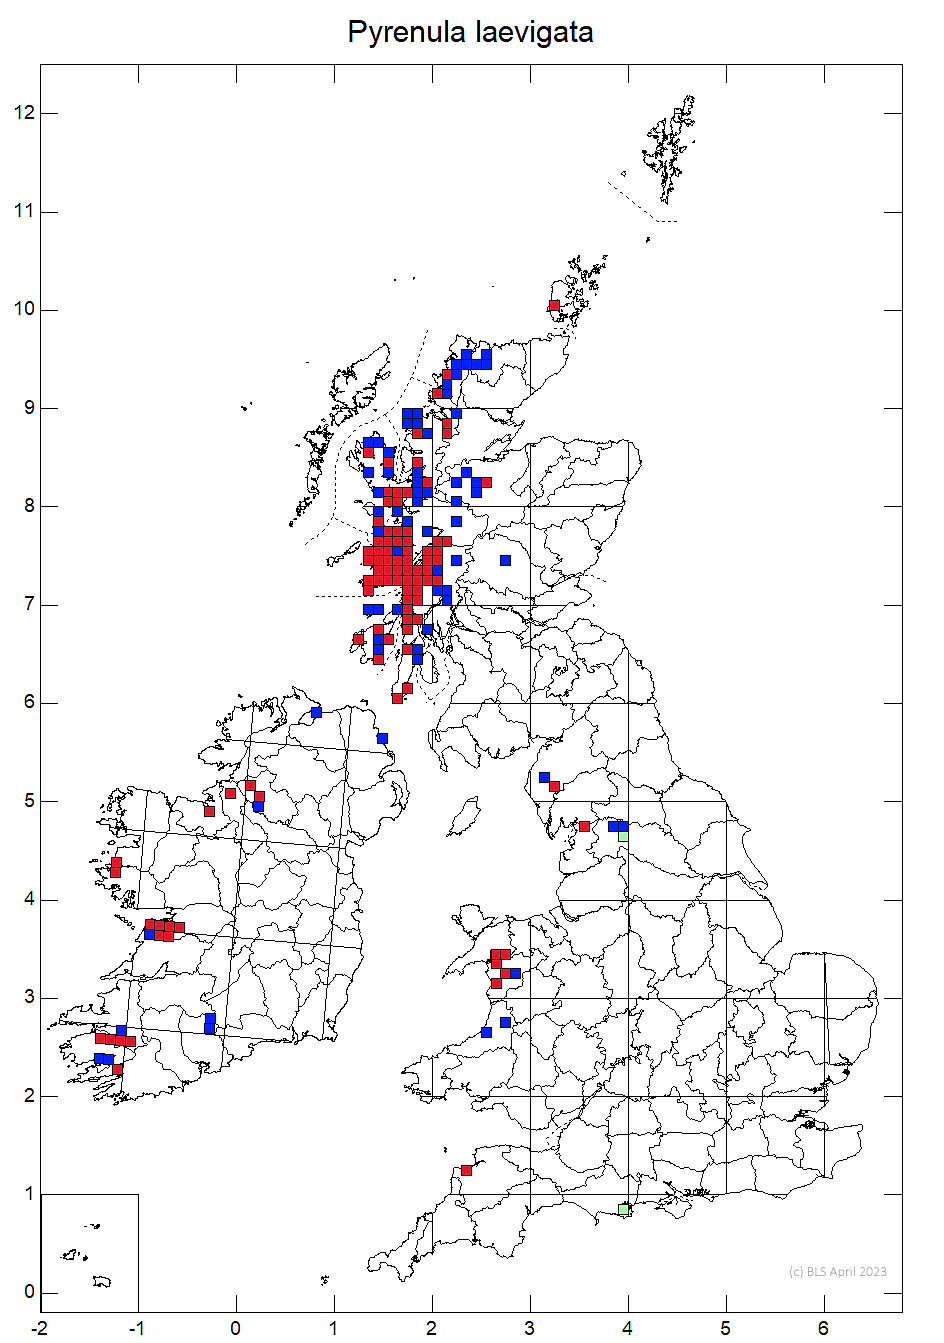 Pyrenula laevigata 10km sq distribution map